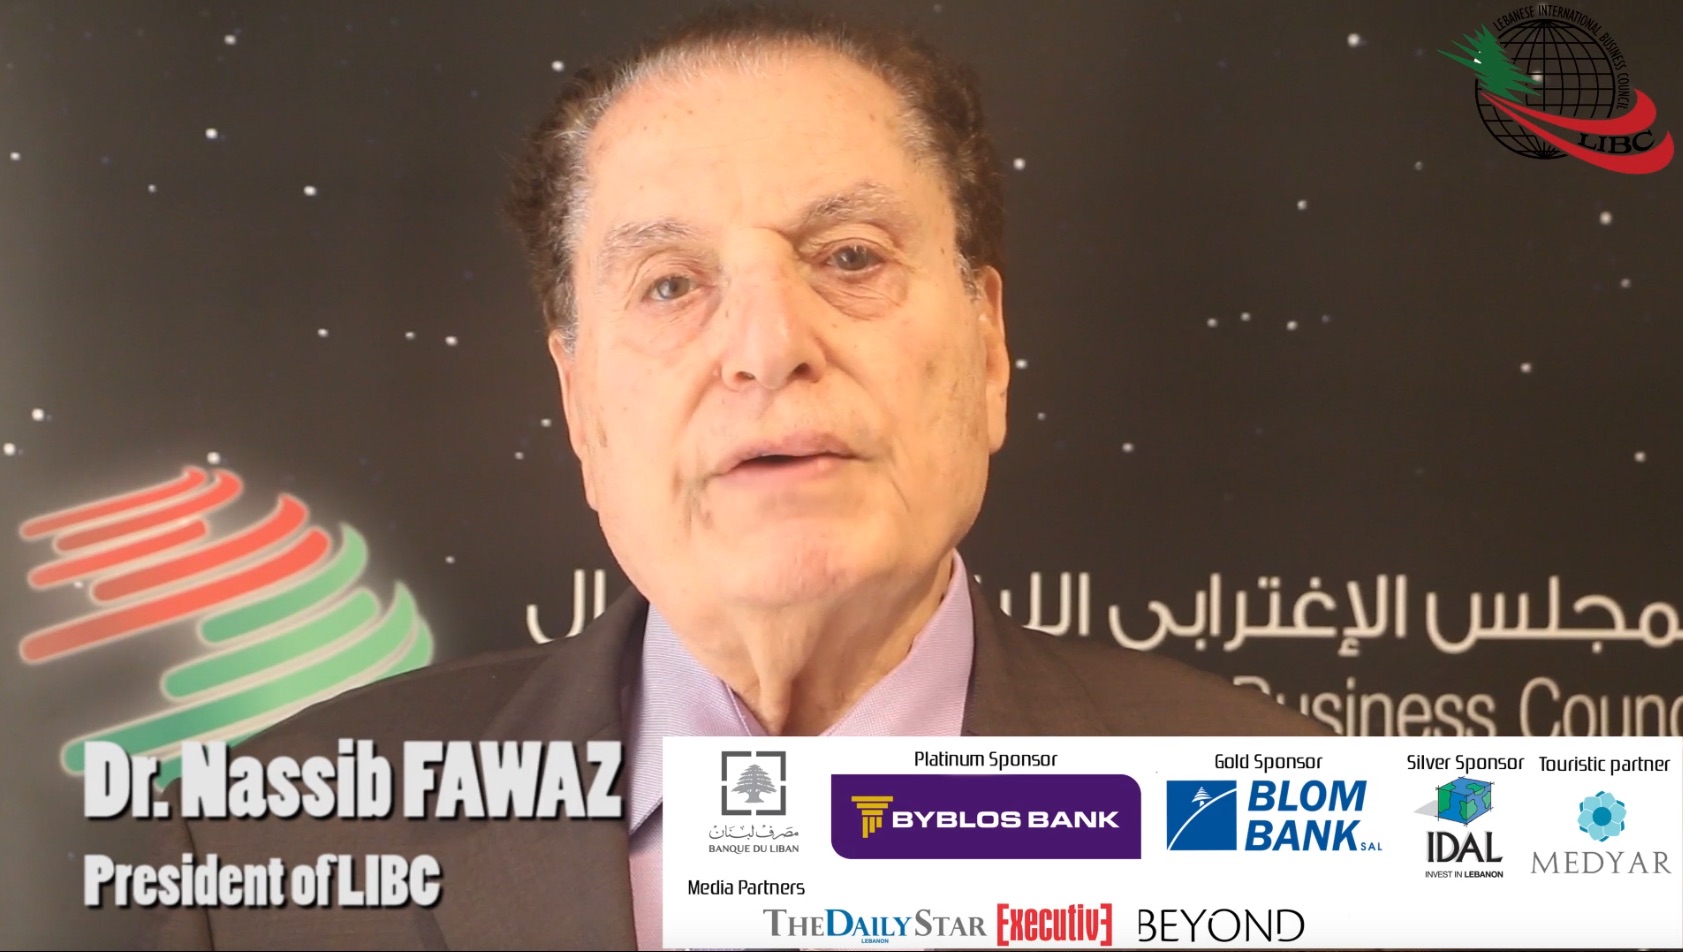 Ned Fawaz Video PL2017 1